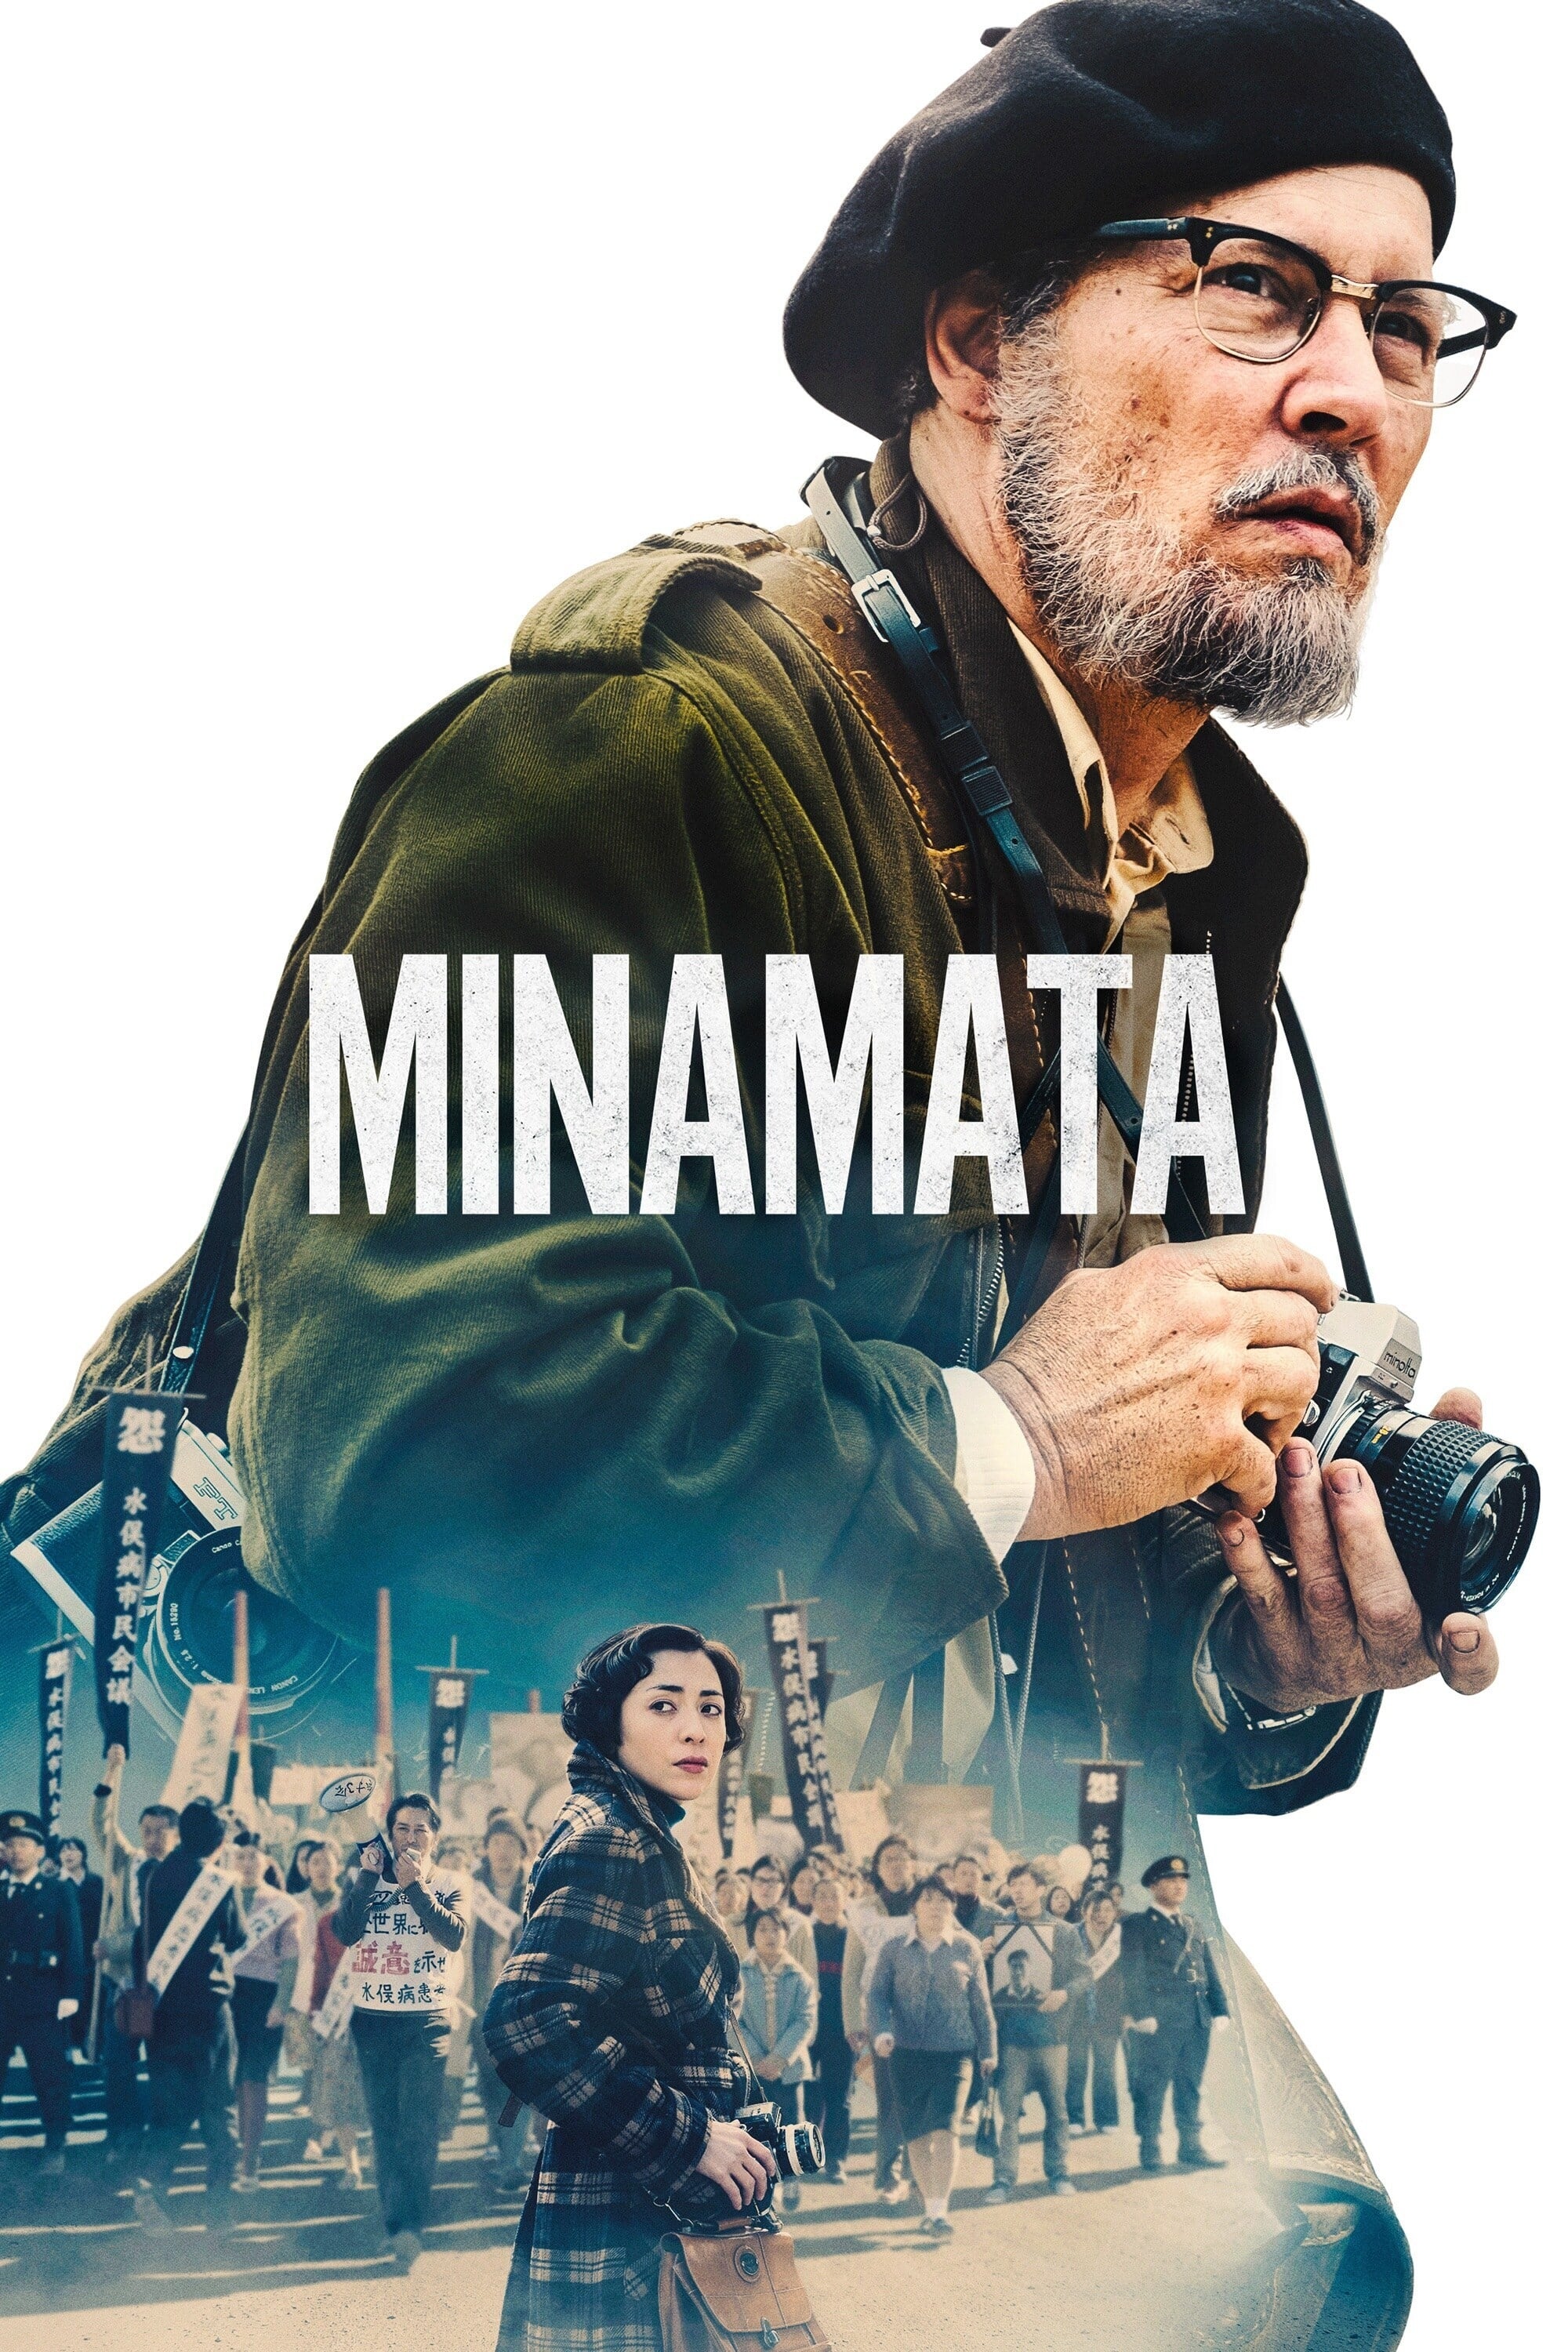 [MINI Super-HQ] Minamata (2020) มินามาตะ ภาพถ่ายโลกตะลึง [1080p] [พากย์ไทย 5.1 + เสียงอังกฤษ DTS] [บรรยายไทย + อังกฤษ] [เสียงไทย + ซับไทย] [DOSYAUPLOAD]